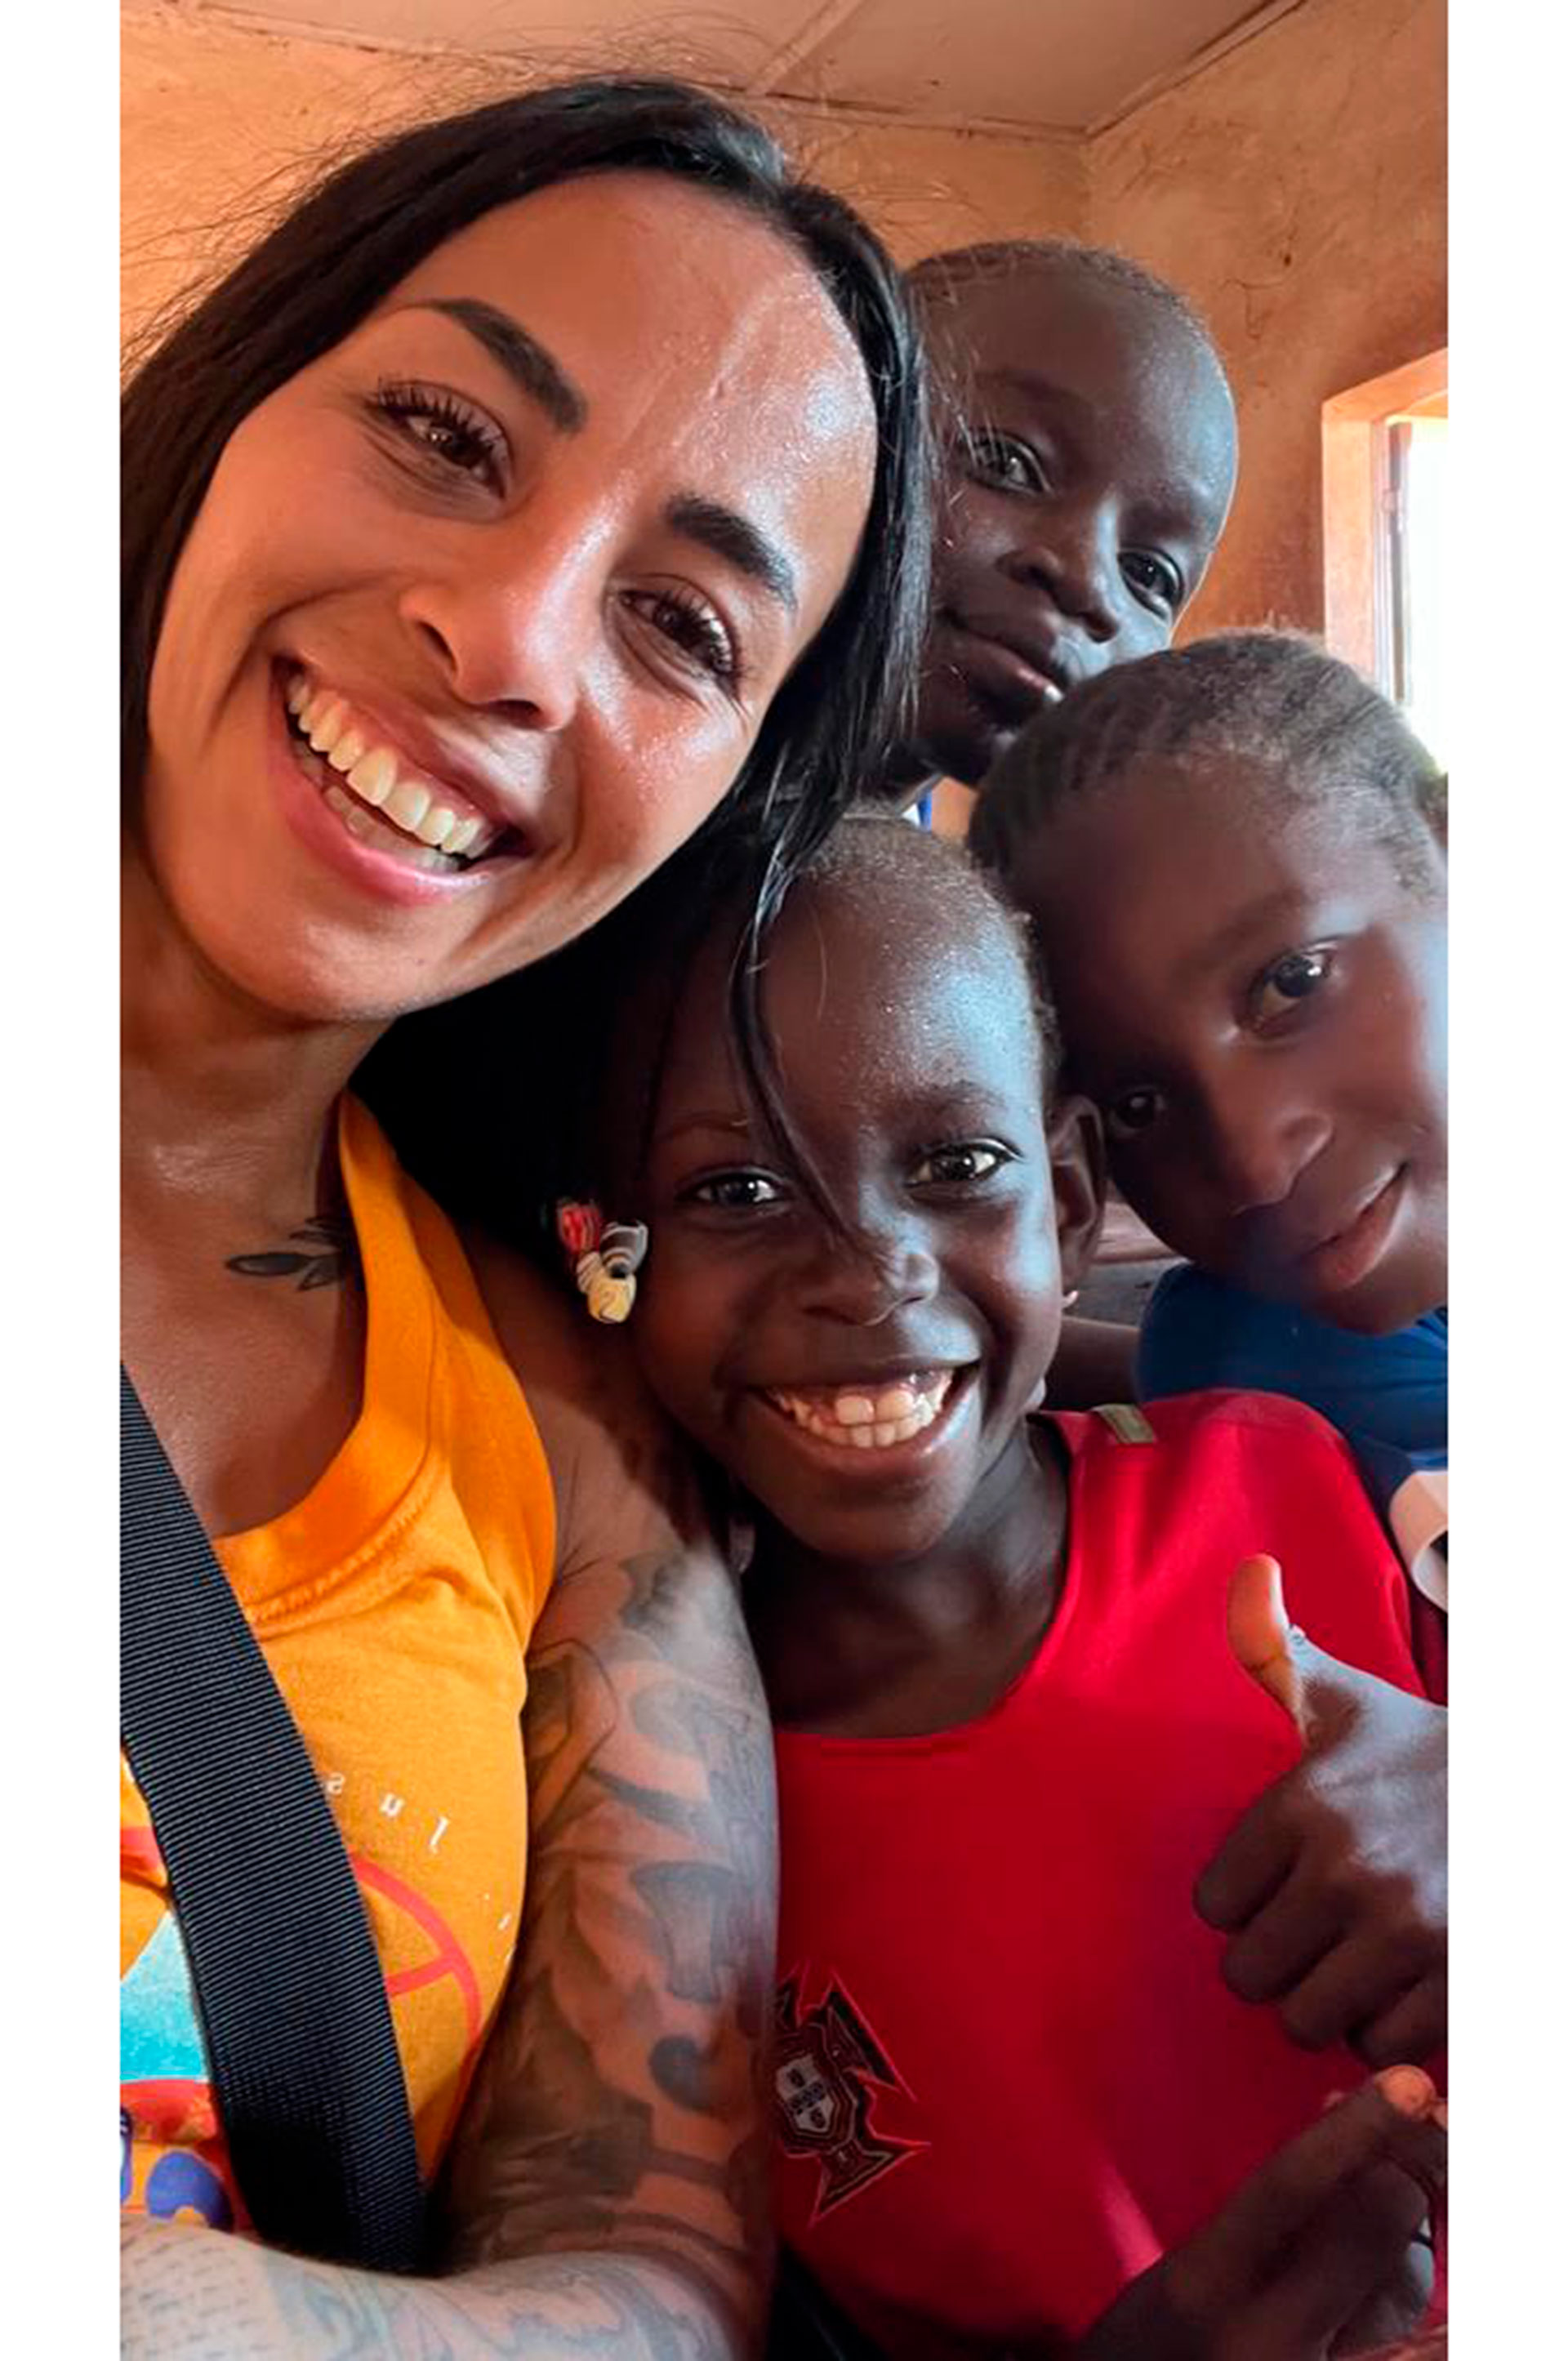 "Niños que me miraban con los ojos gigantes, me devolvían sonrisas hermosas y no me dejaban de tocar el pelo", recuerda Evelina de su experiencia en Mali